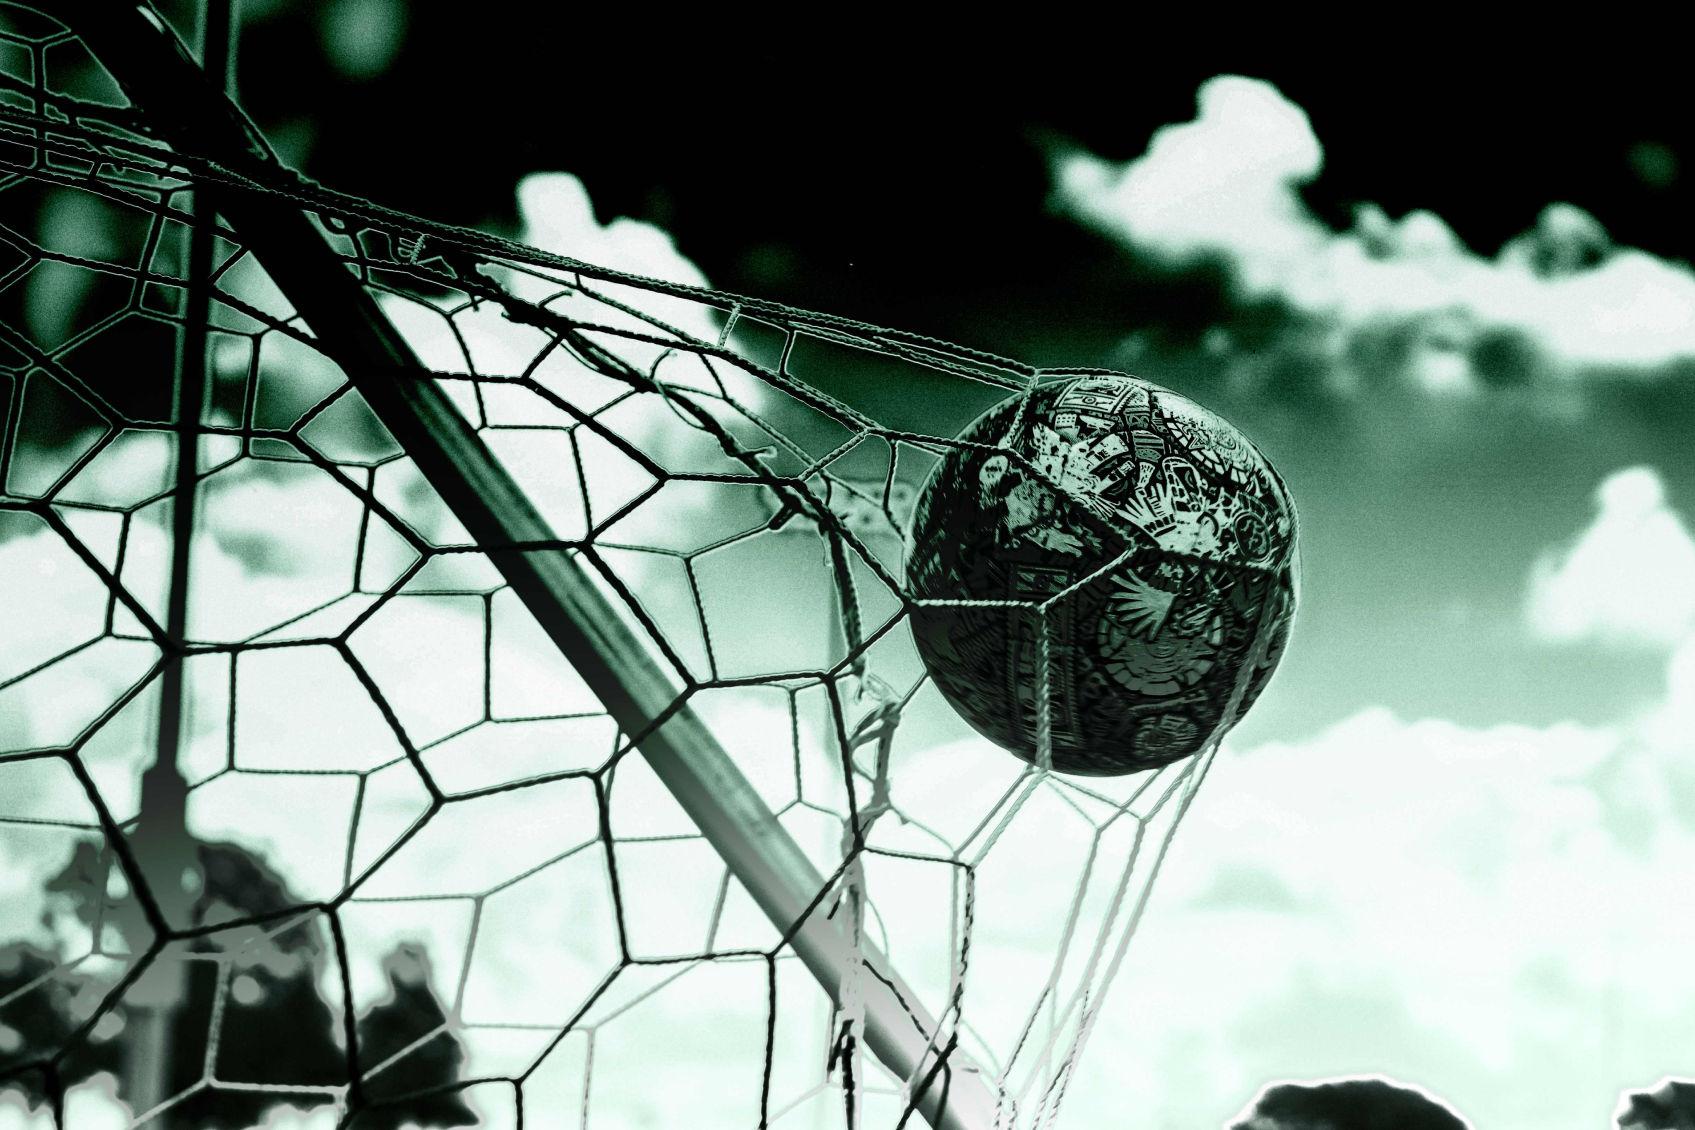 Sem conquistar o Mundial desde 2012, futebol brasileiro se apoia na mágica  do Fluminense